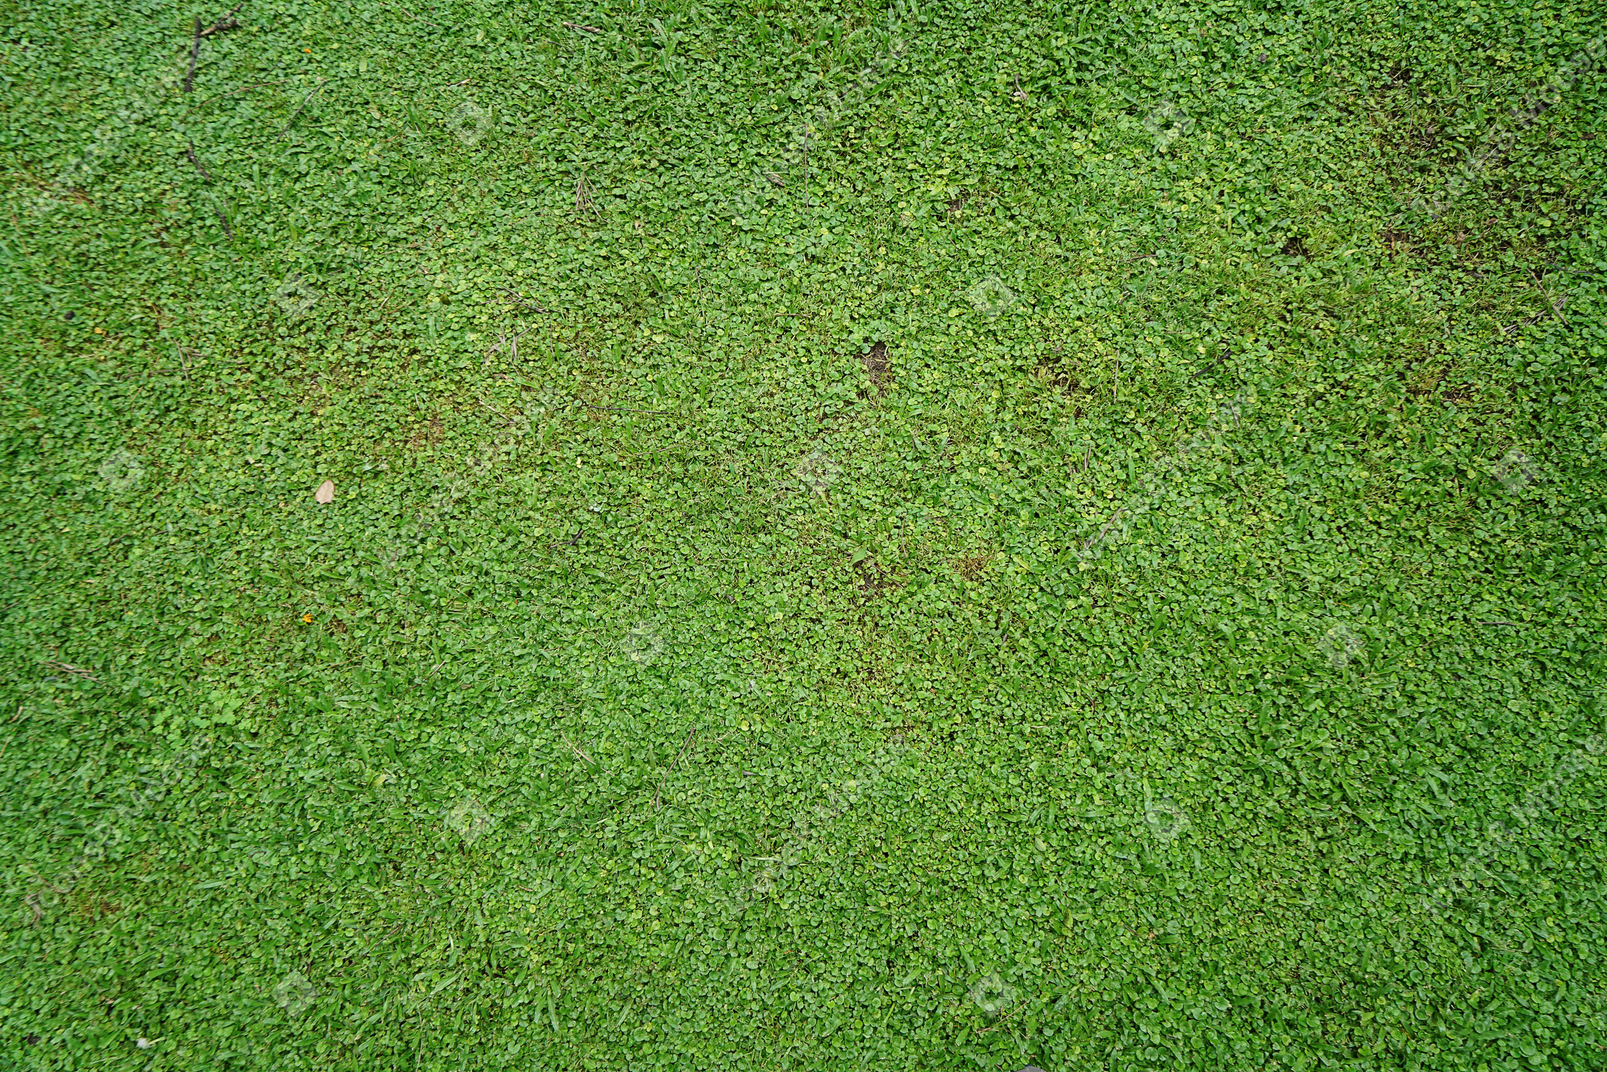 Carpet of green grass